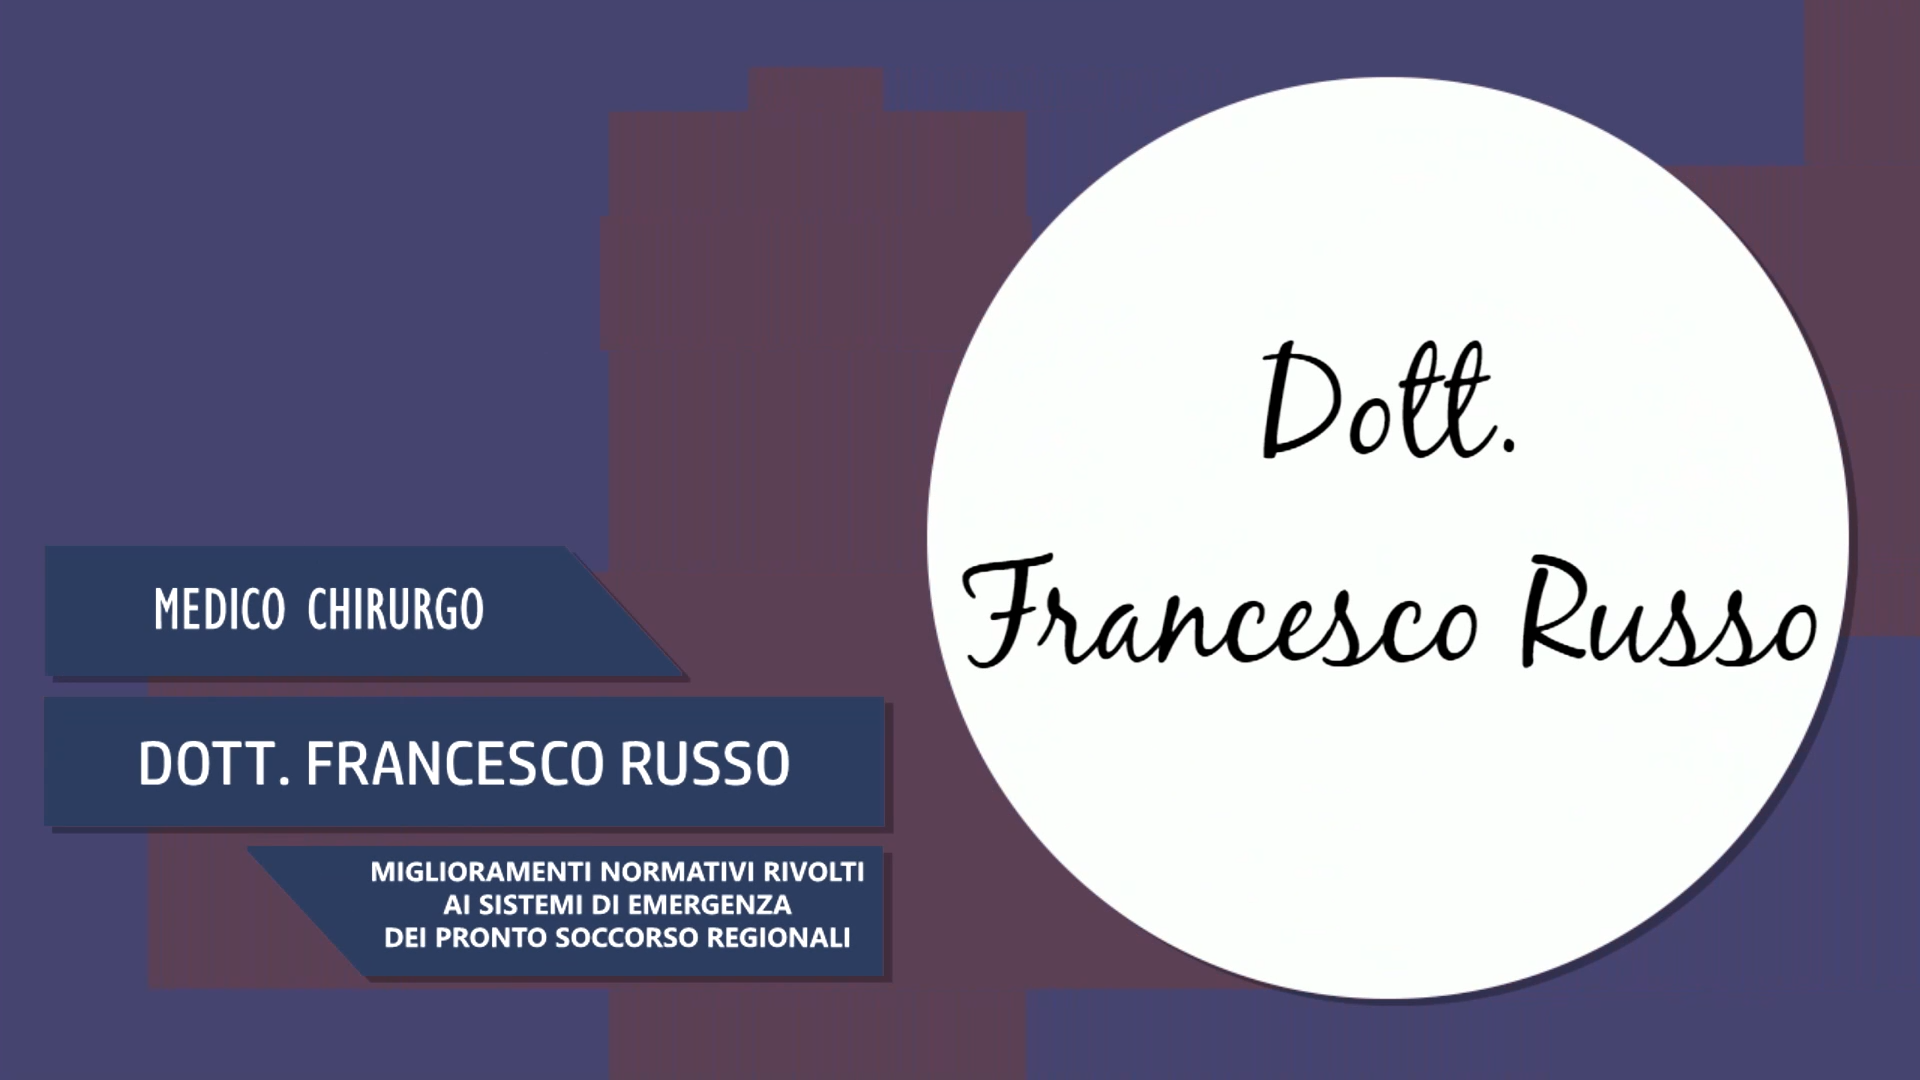 Dott. Francesco Russo – Miglioramenti Normativi per sistemi di emergenza dei pronto soccorso regionali